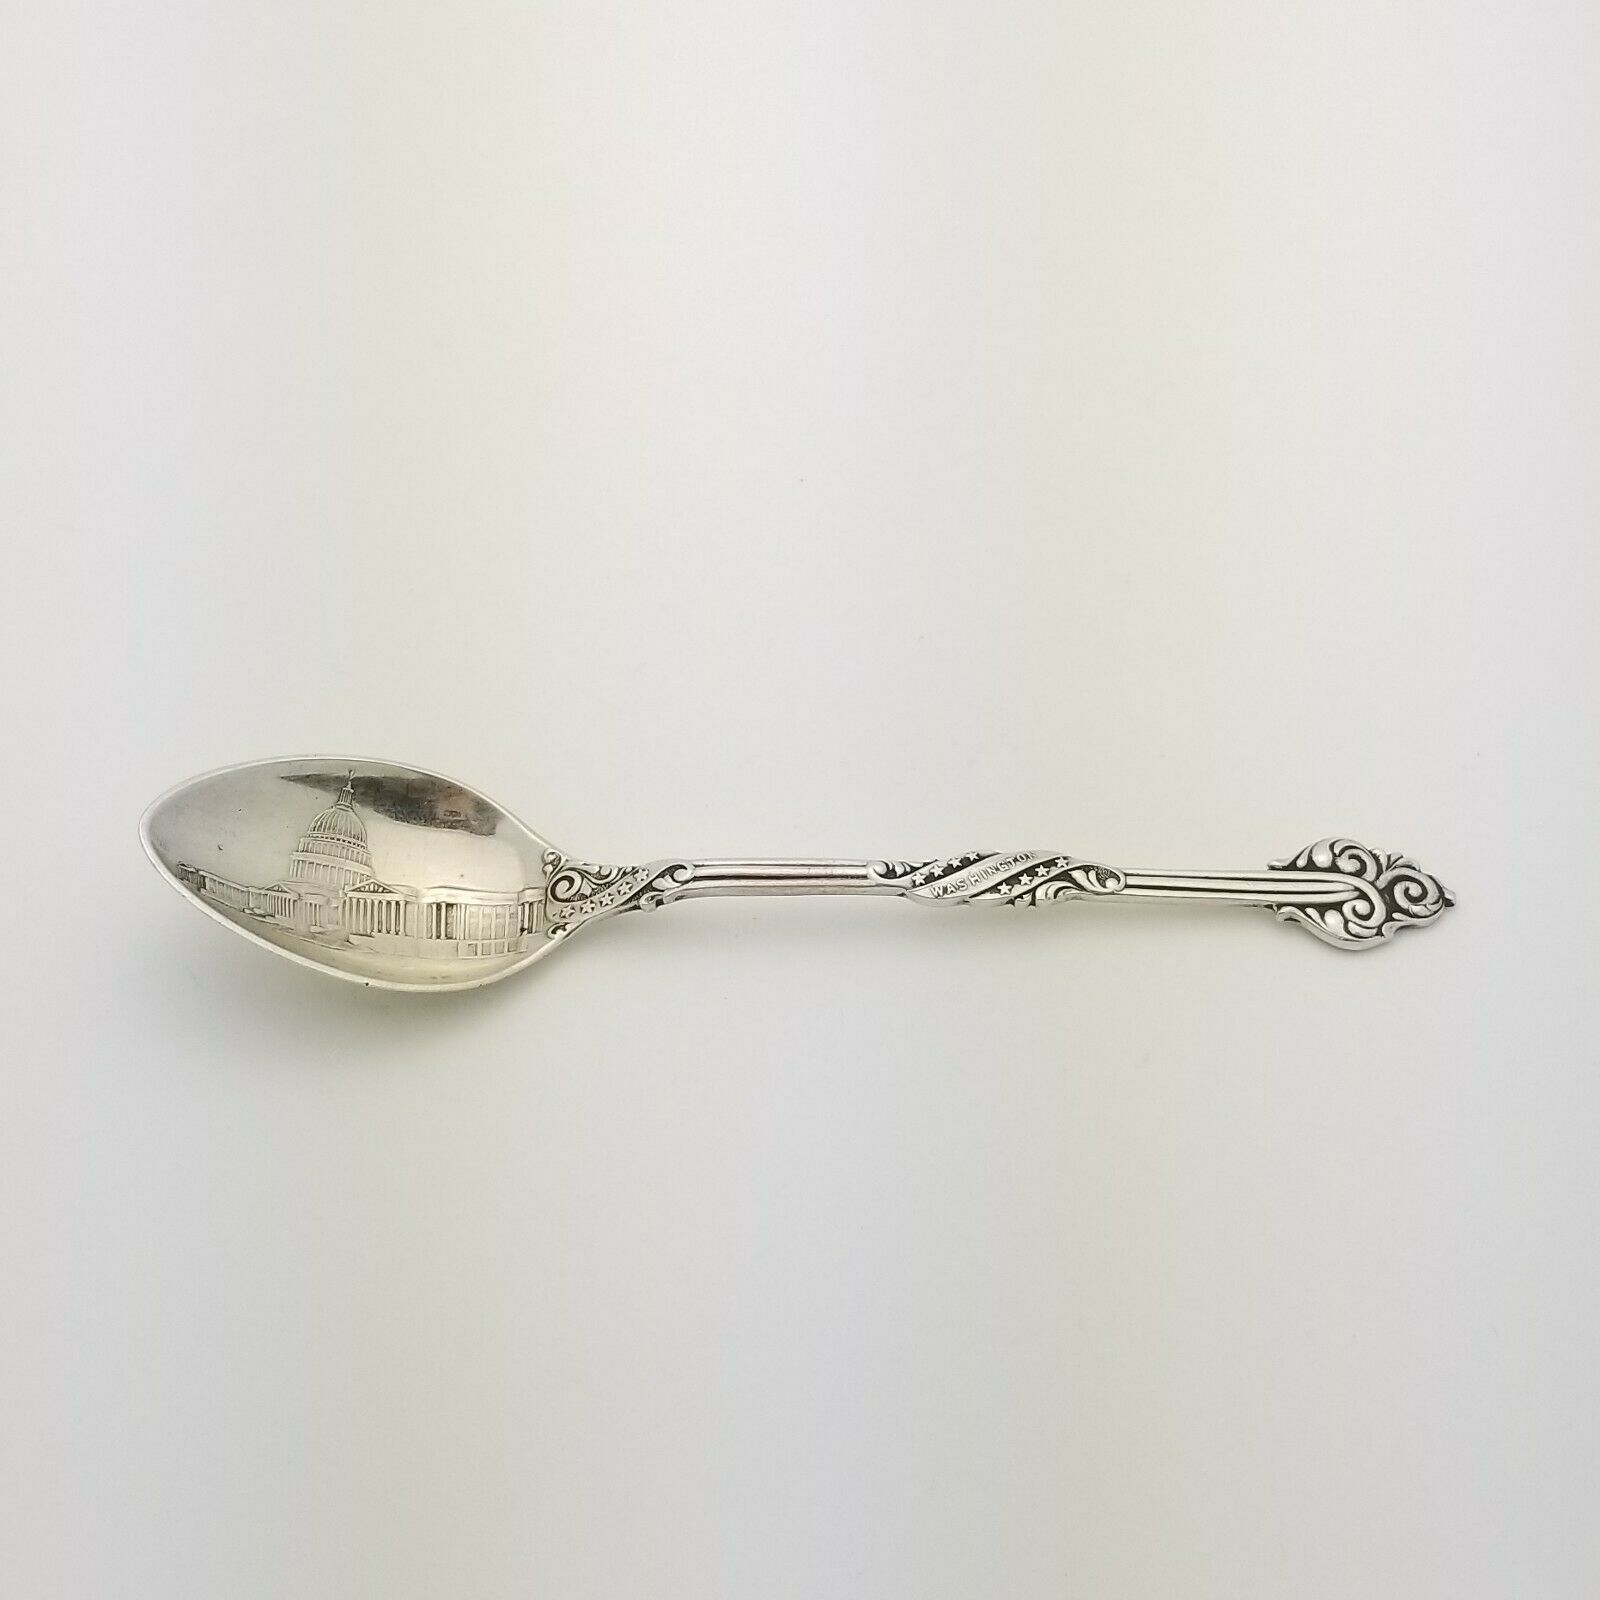 Us Capitol Washington Dc Antique Howard Sterling Co Souvenir Spoon Late 1890's